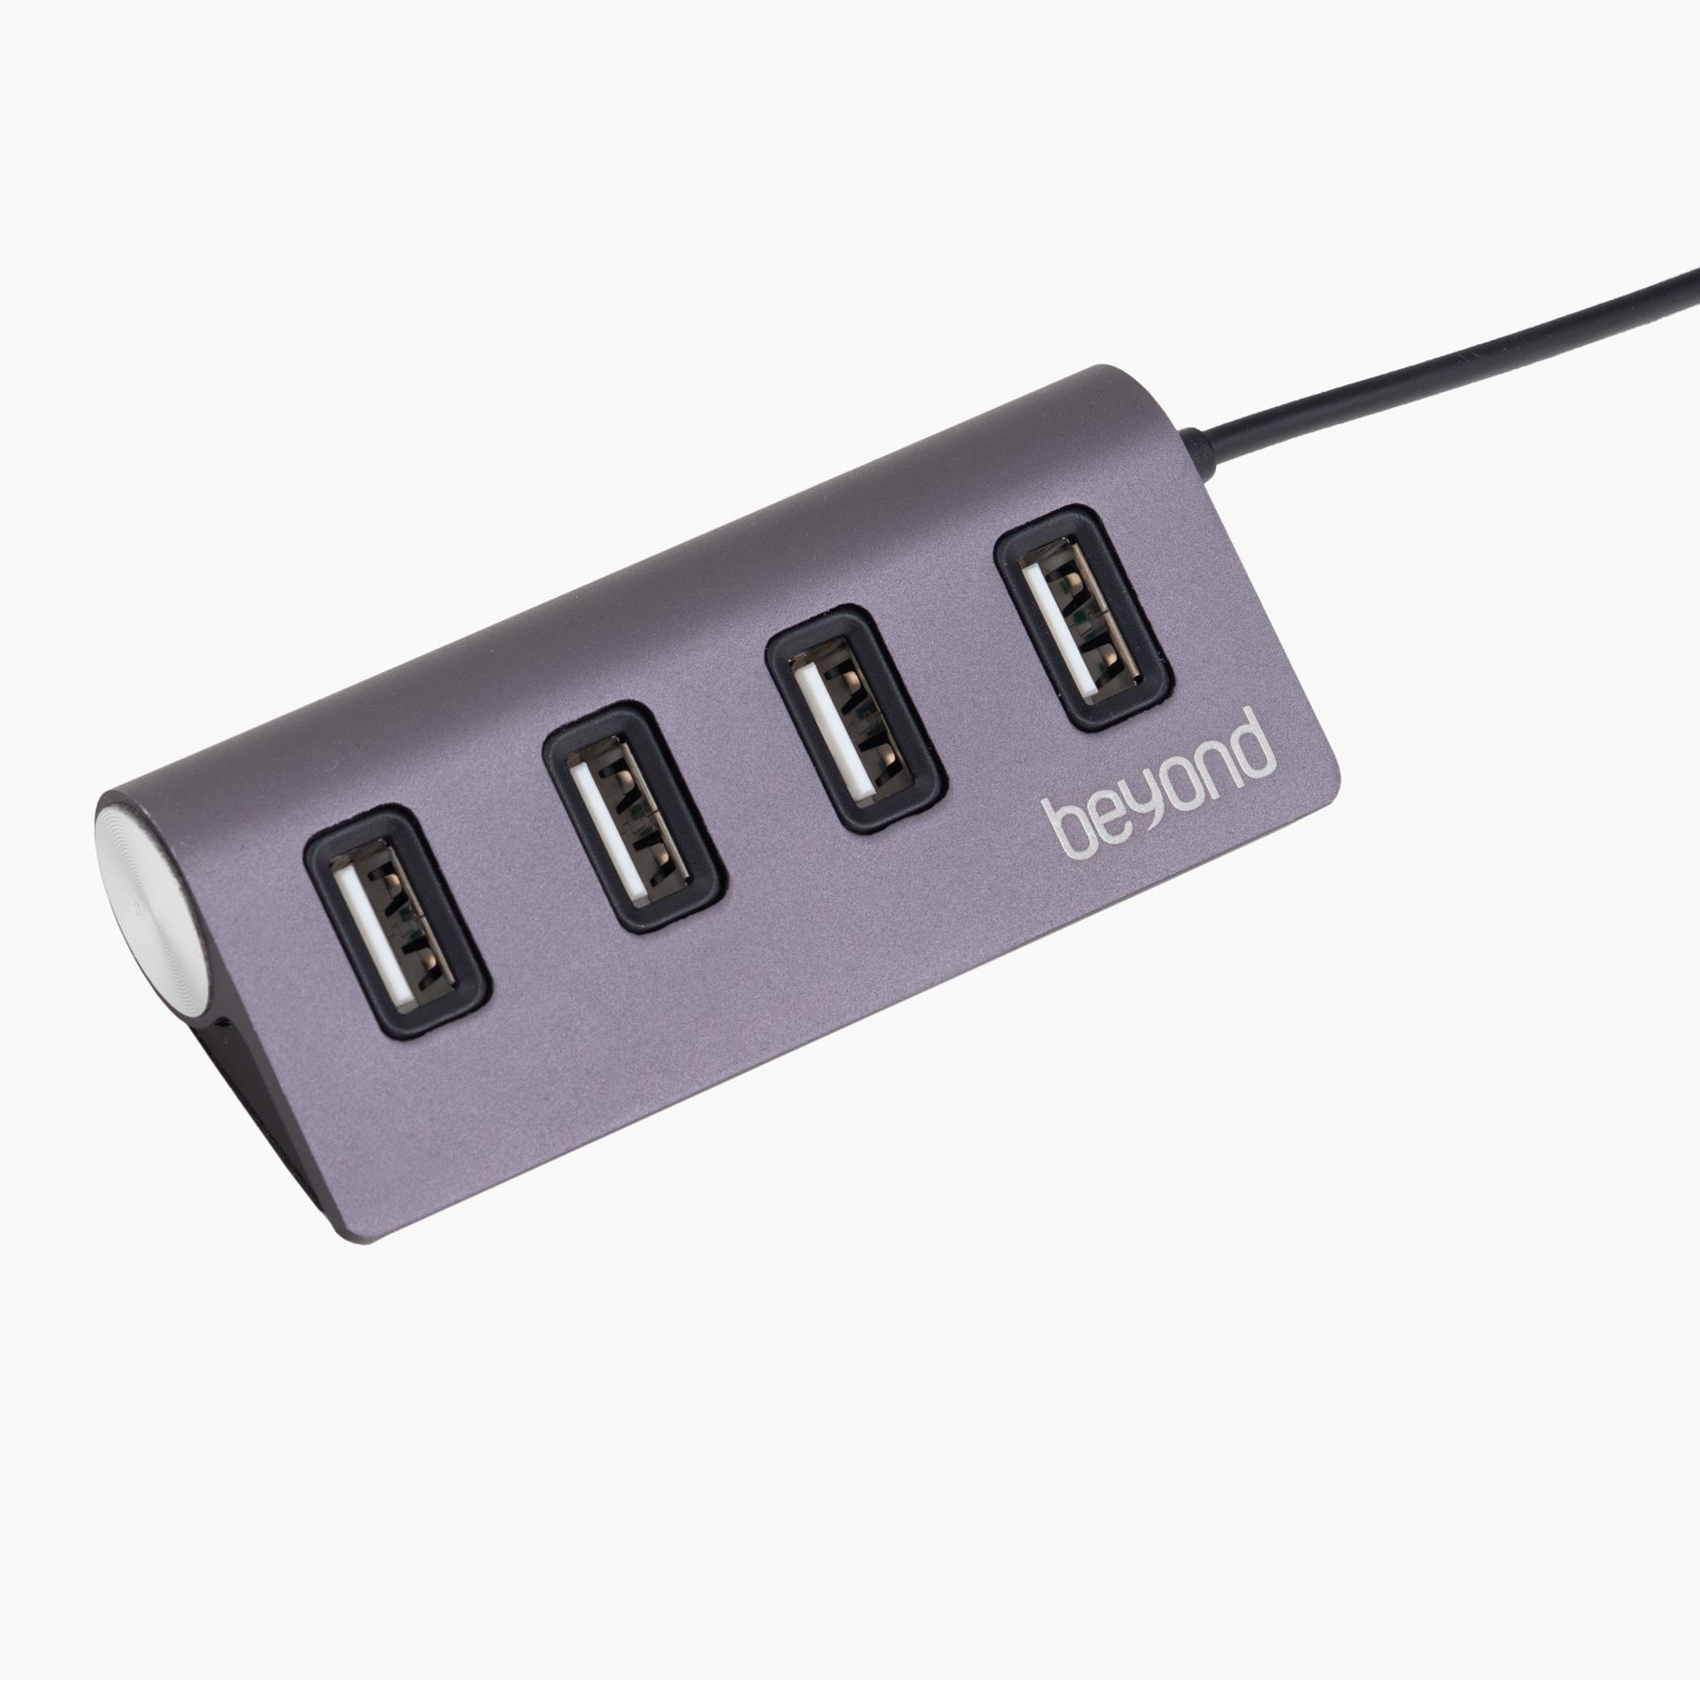 هاب 4 پورت USB 2.0 بیاند مدل BA-409